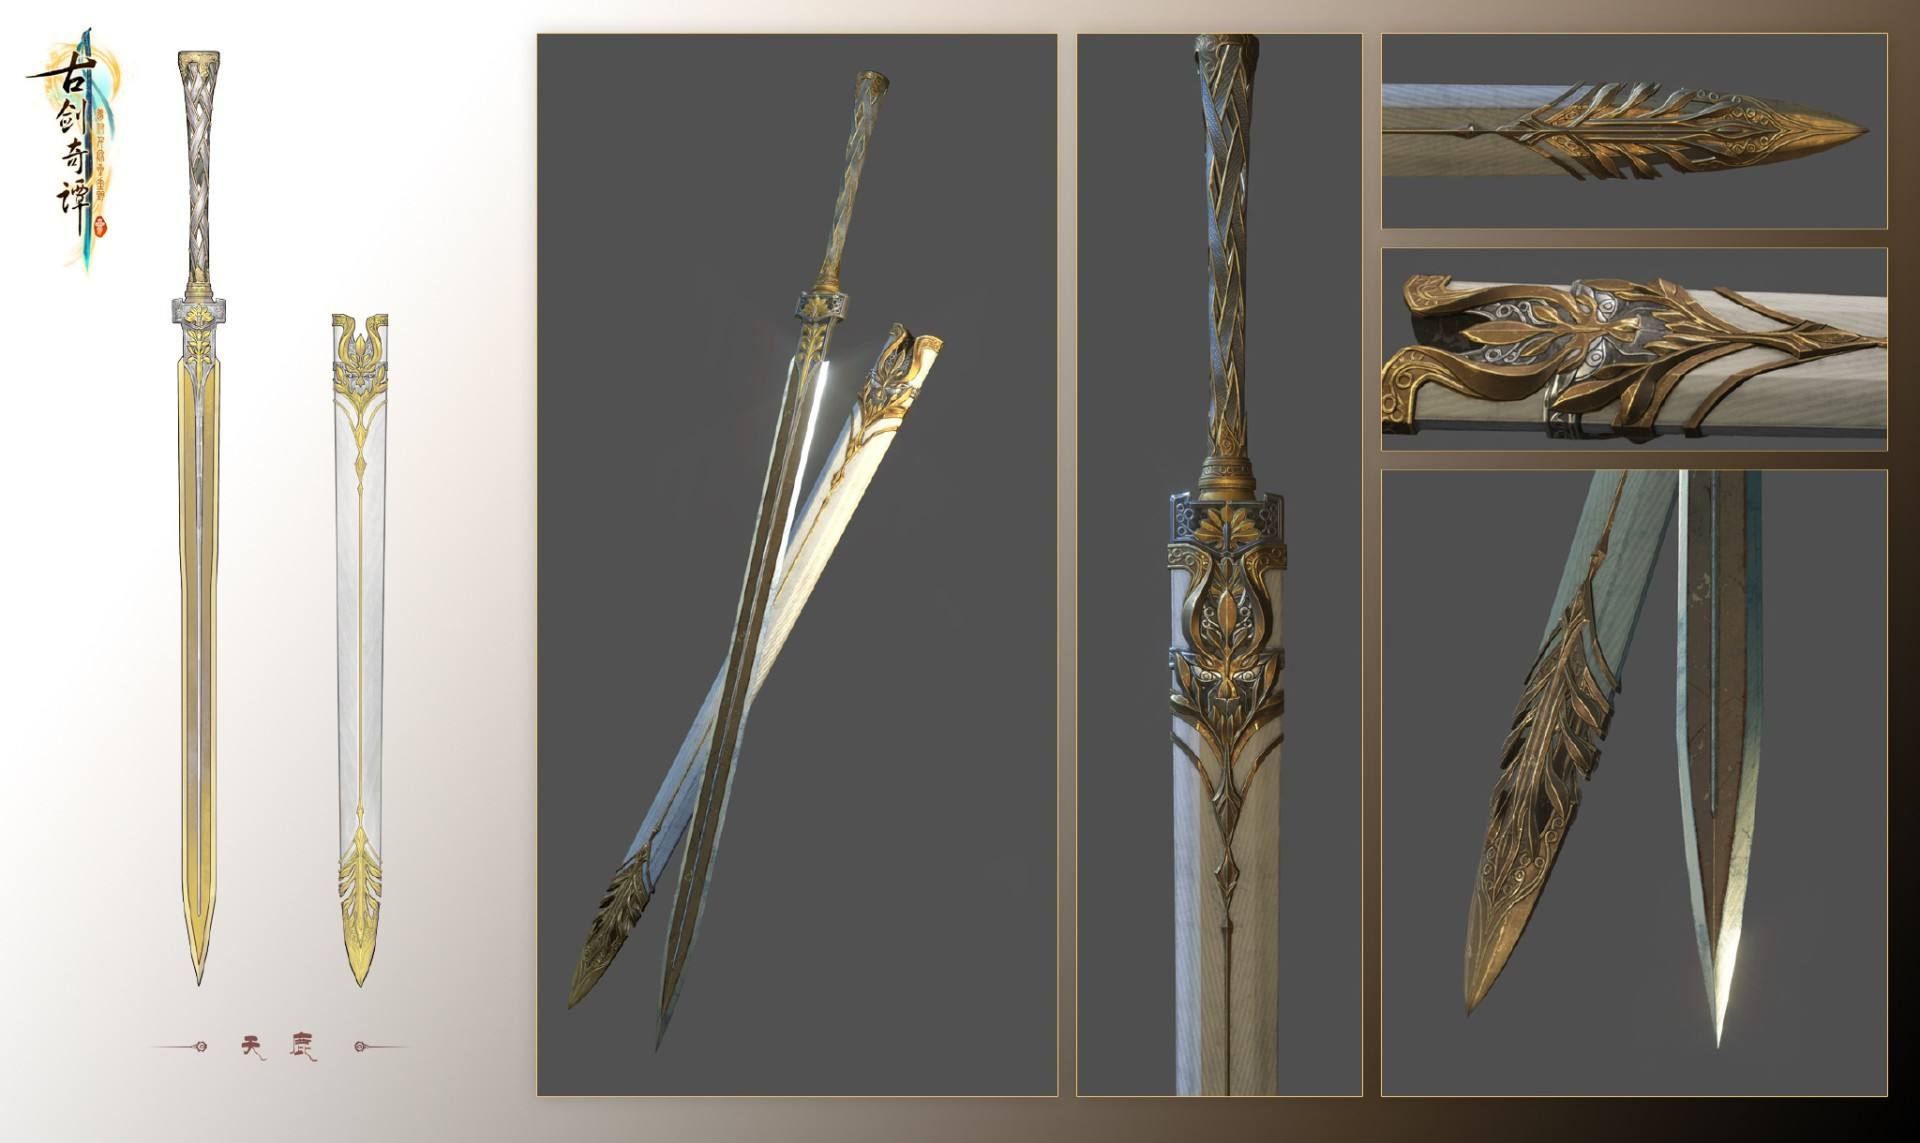 《古剑奇谭三》游戏之中的武器采用了挂载显示的做法,实际可见,并且